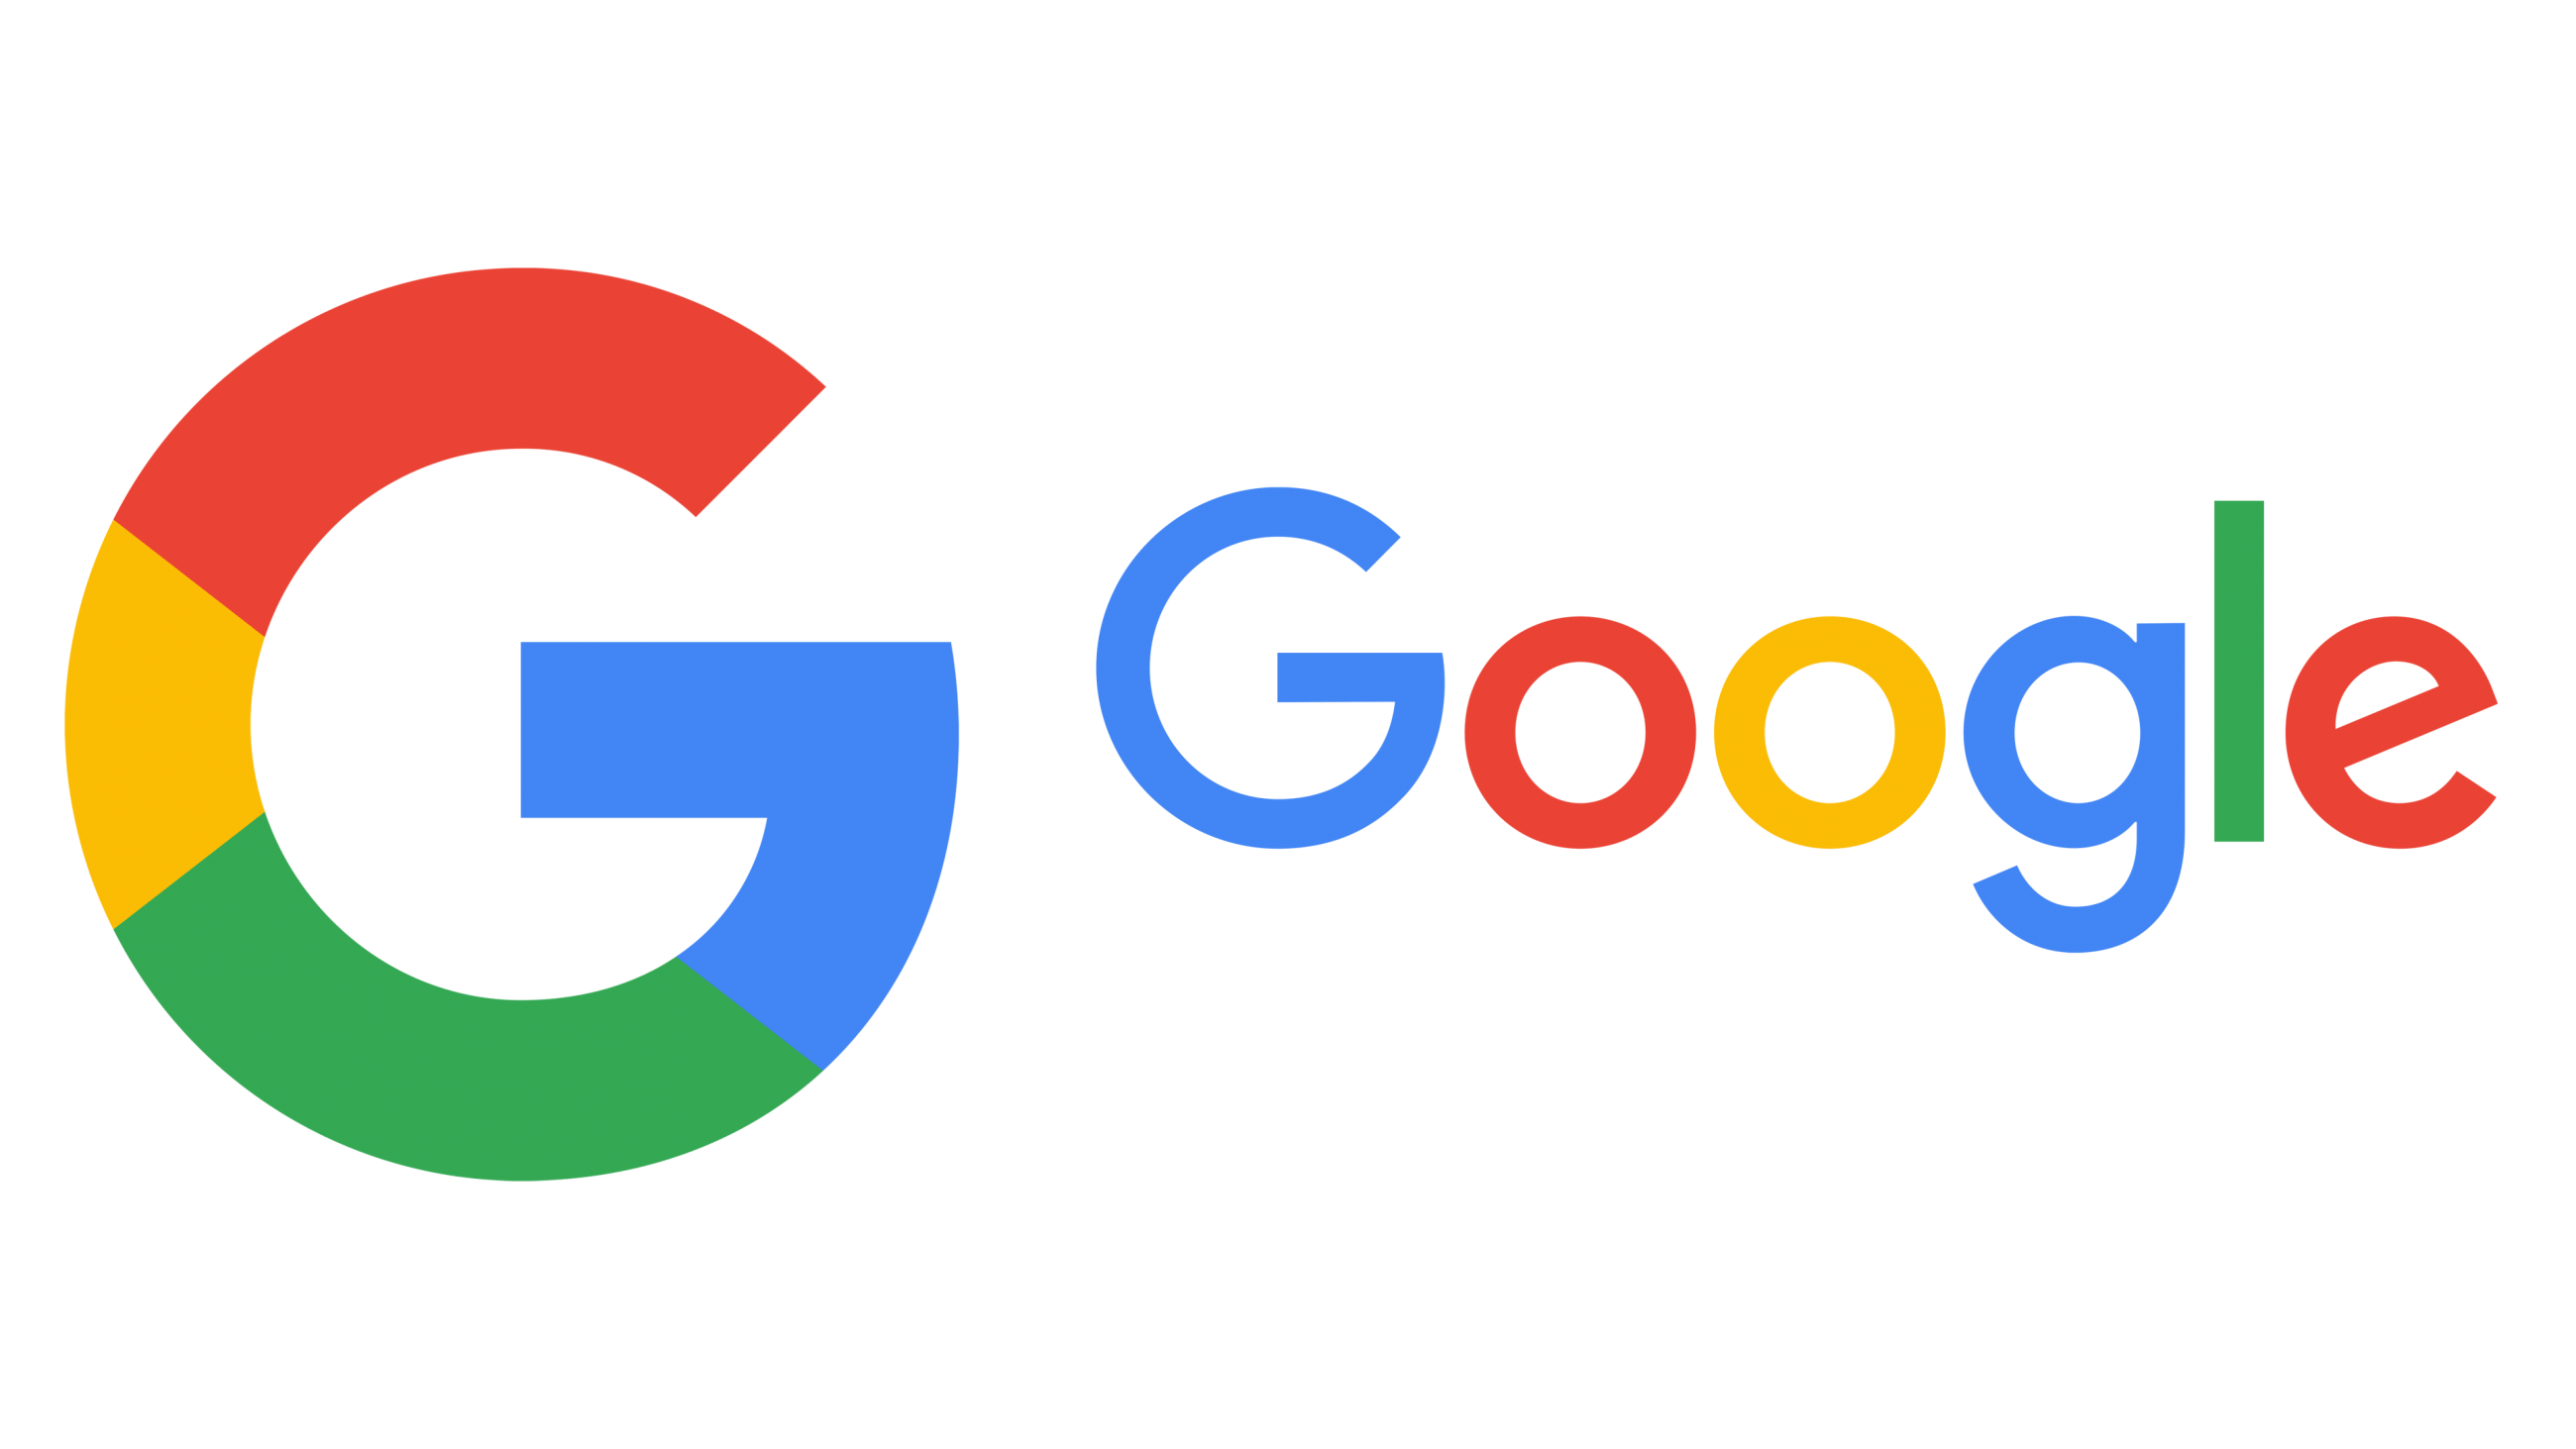 Google re. Значок гугл. Новый логотип Google. Логотип гугл на прозрачном фоне.